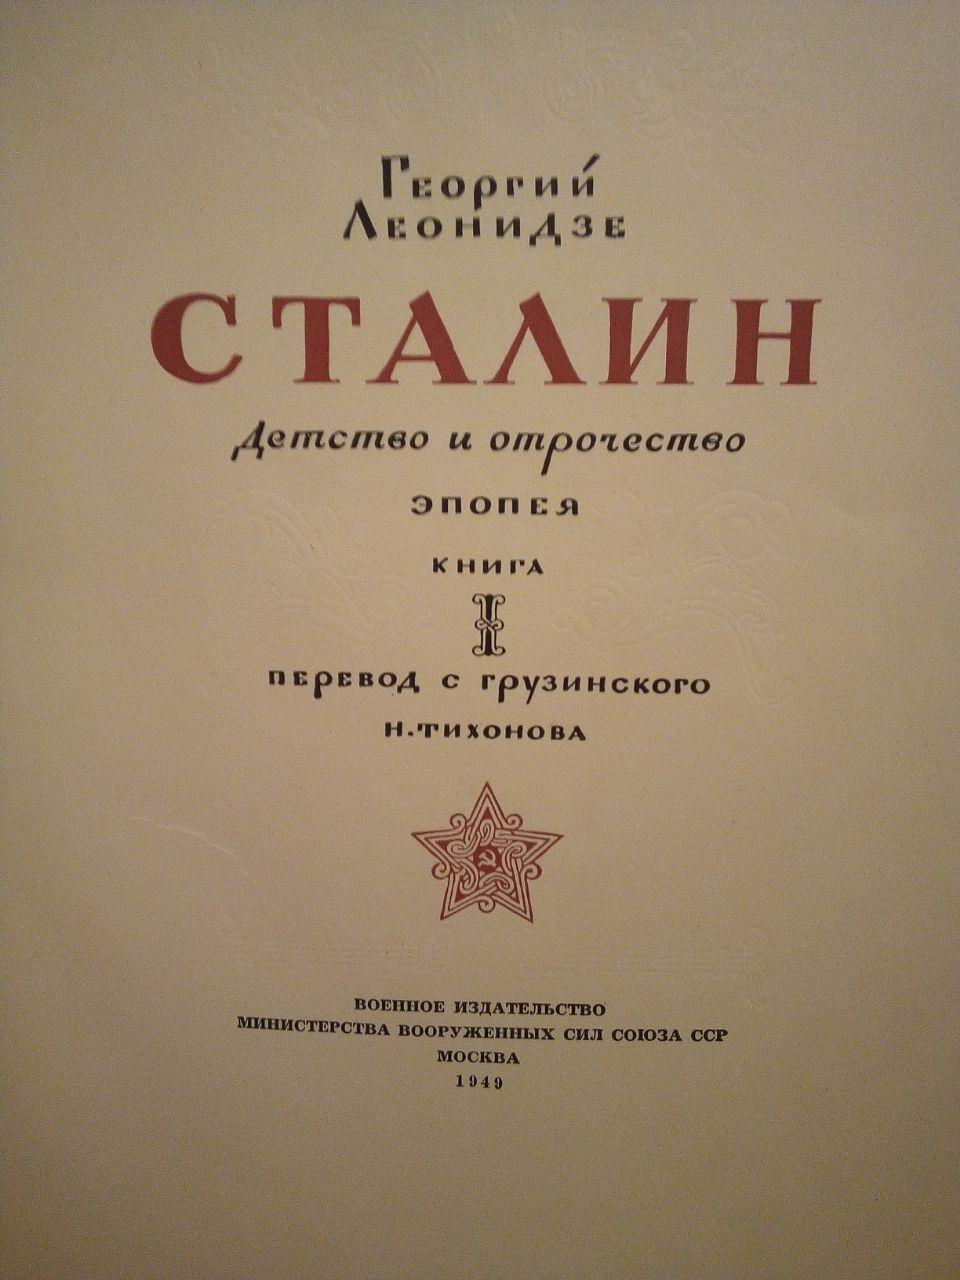 Георгій Леонідзе "Сталін. дитинство та відрочість". 1949 рік